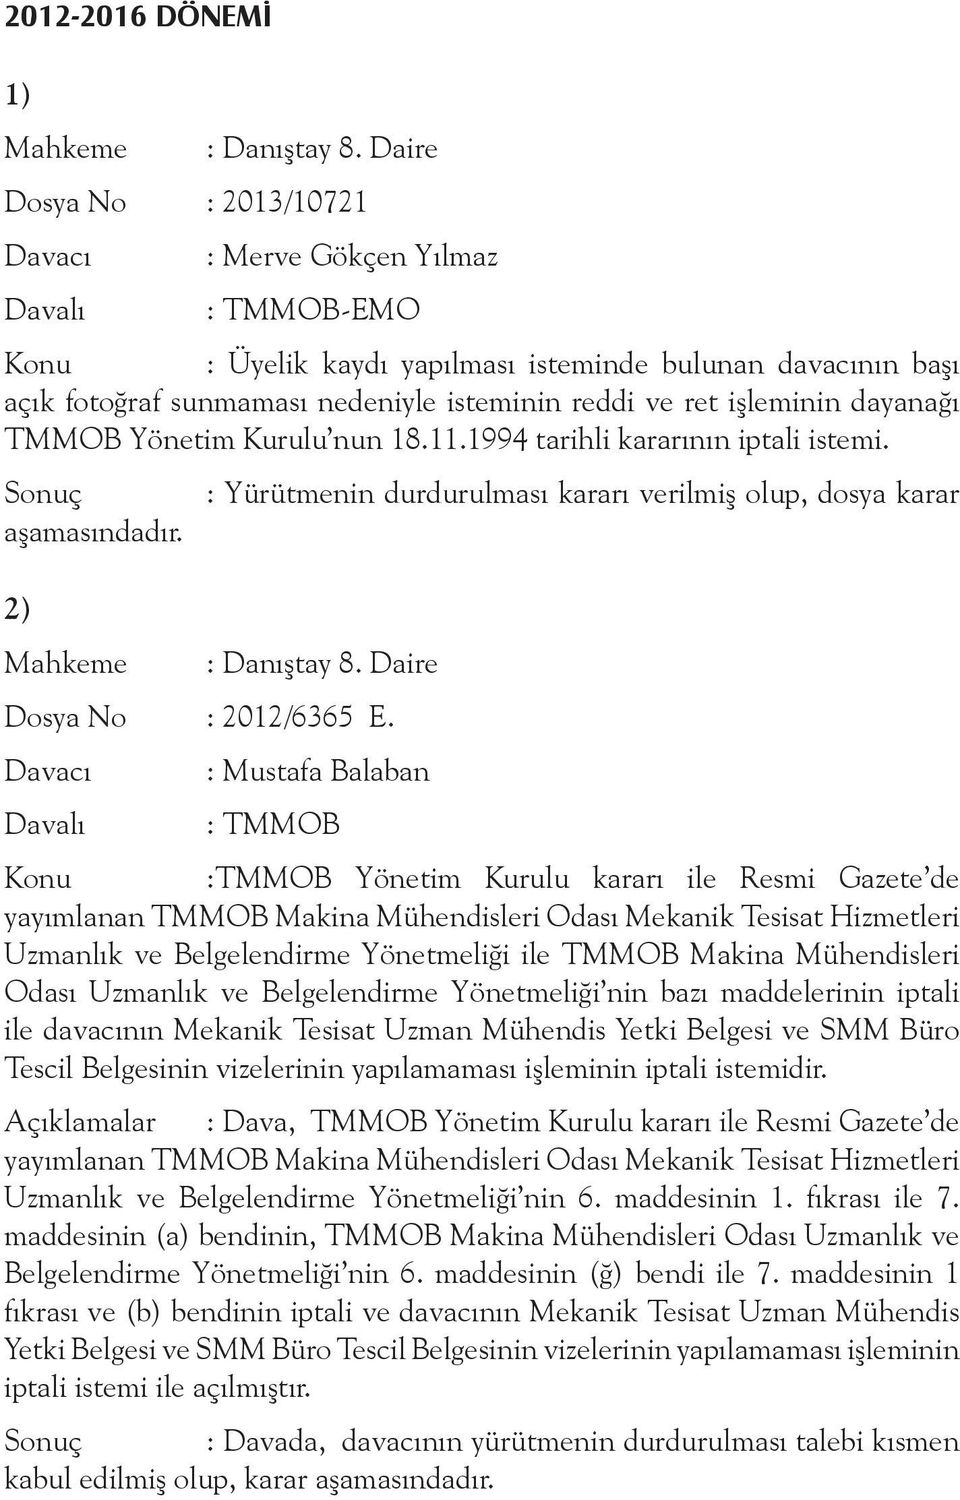 : Mustafa Balaban Konu :TMMOB Yönetim Kurulu kararı ile Resmi Gazete de yayımlanan TMMOB Makina Mühendisleri Odası Mekanik Tesisat Hizmetleri Uzmanlık ve Belgelendirme Yönetmeliği ile TMMOB Makina